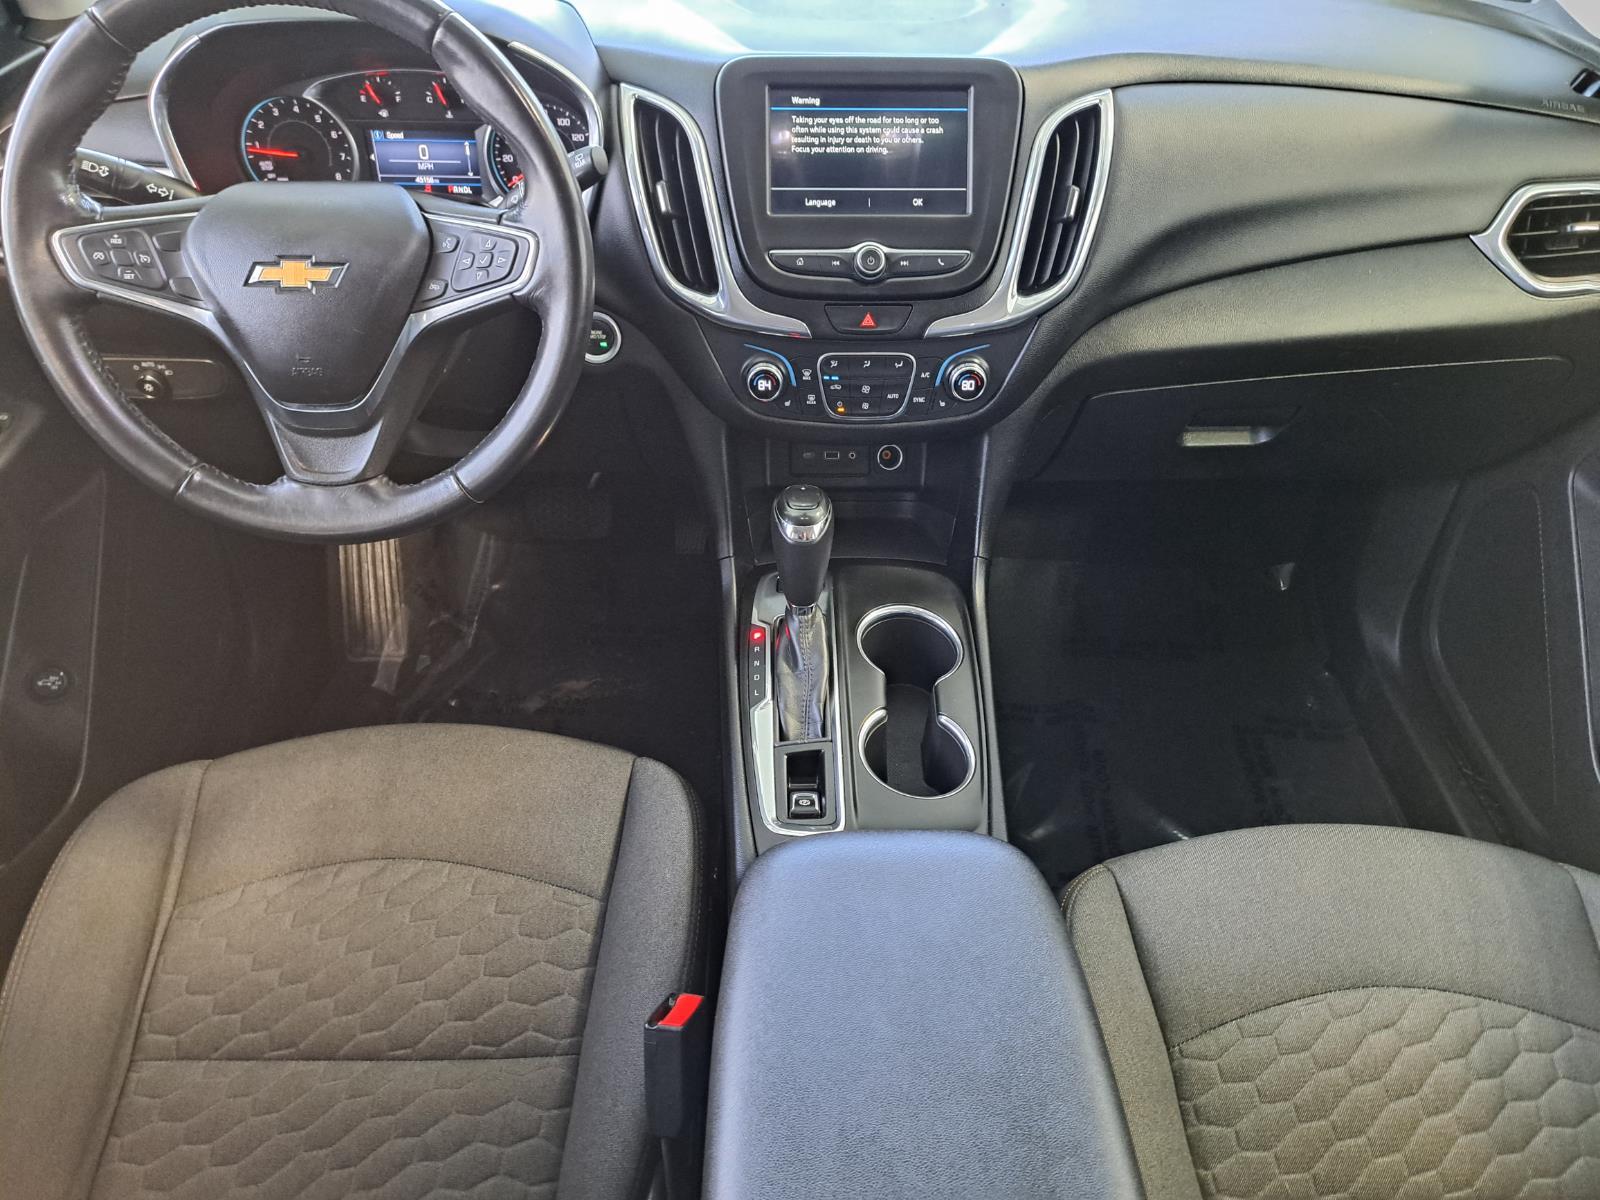 2019 Chevrolet Equinox LT SUV All Wheel Drive thumbnail 34